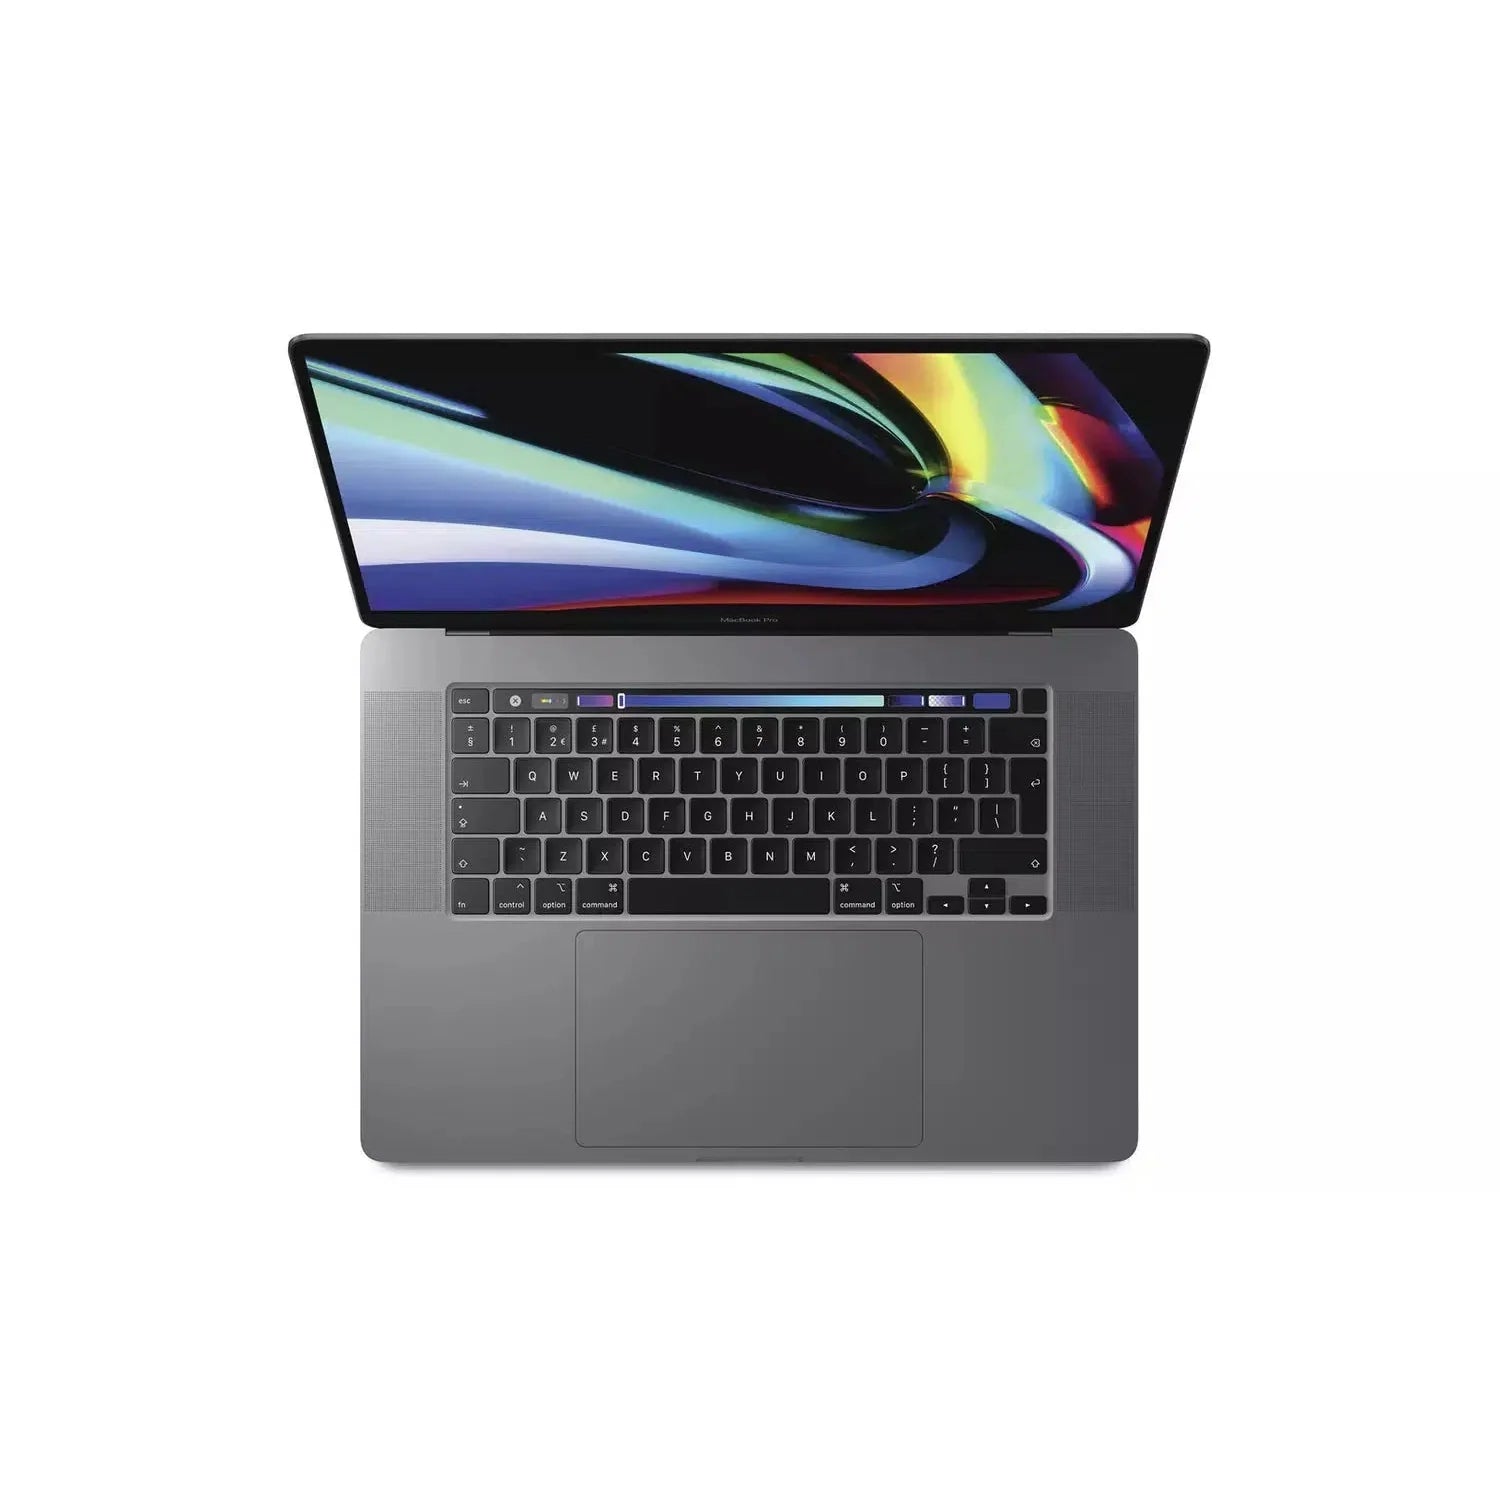 Apple MacBook Pro 16", MVVM2LL/A (2019), Intel Core i9, 16GB RAM, 1TB SSD, Silver - Refurbished Good